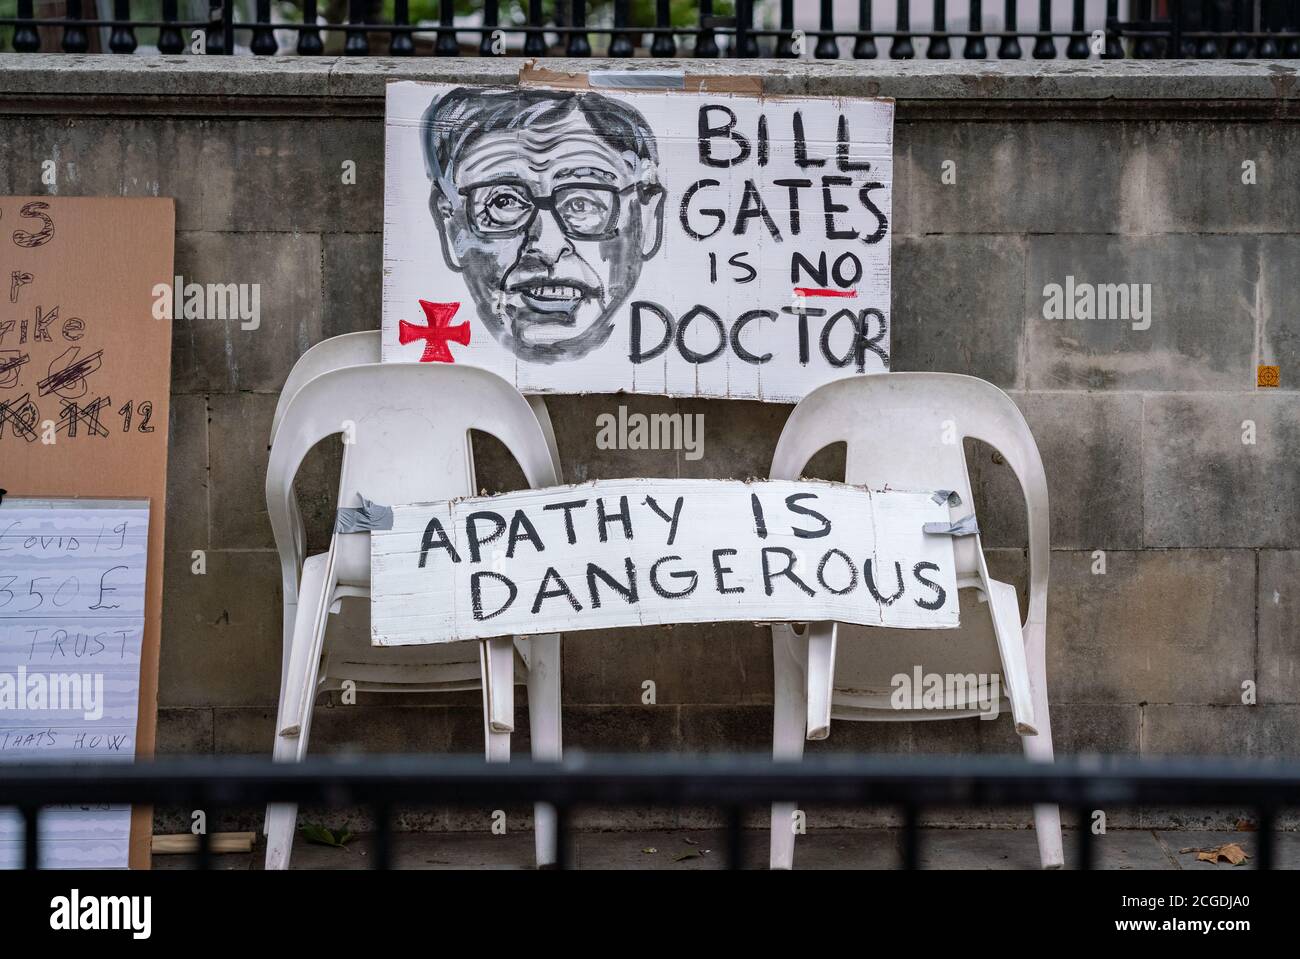 ‘Unite for Freedom’ Massendemonstration der COVID-Verschwörungstheoretiker auf dem Trafalgar Square, London, Großbritannien. Stockfoto